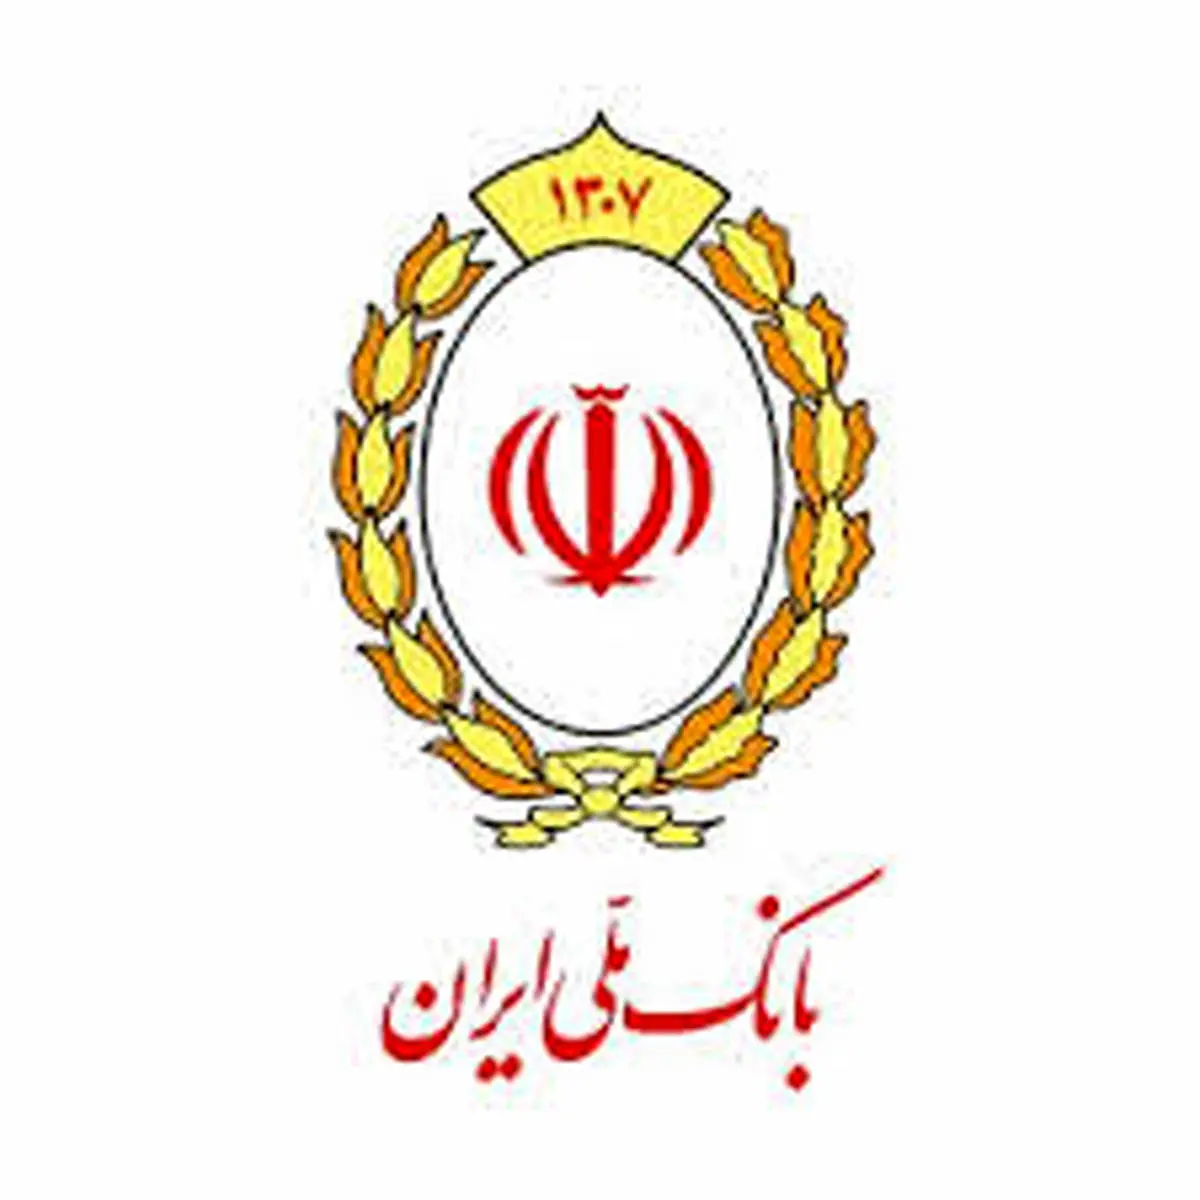 تسهیلات بانک ملی ایران با نرخ سود انتخابی مشتریان

